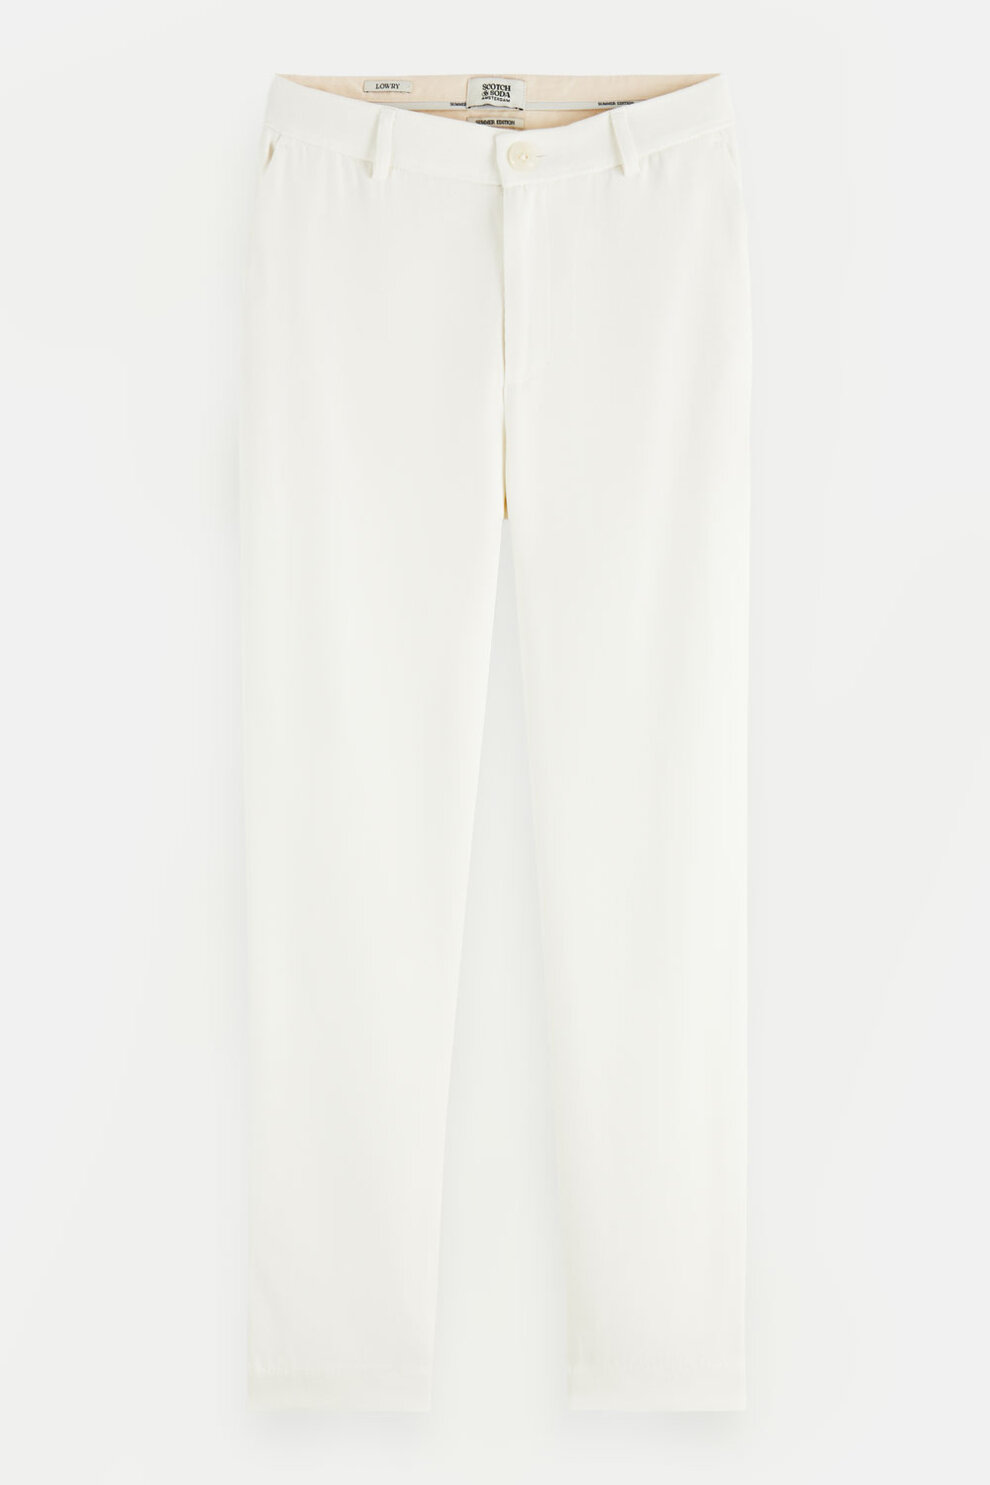 ŽENE - Hlače - Scotch & Soda Lowry hlače - Duge hlače - Bijela